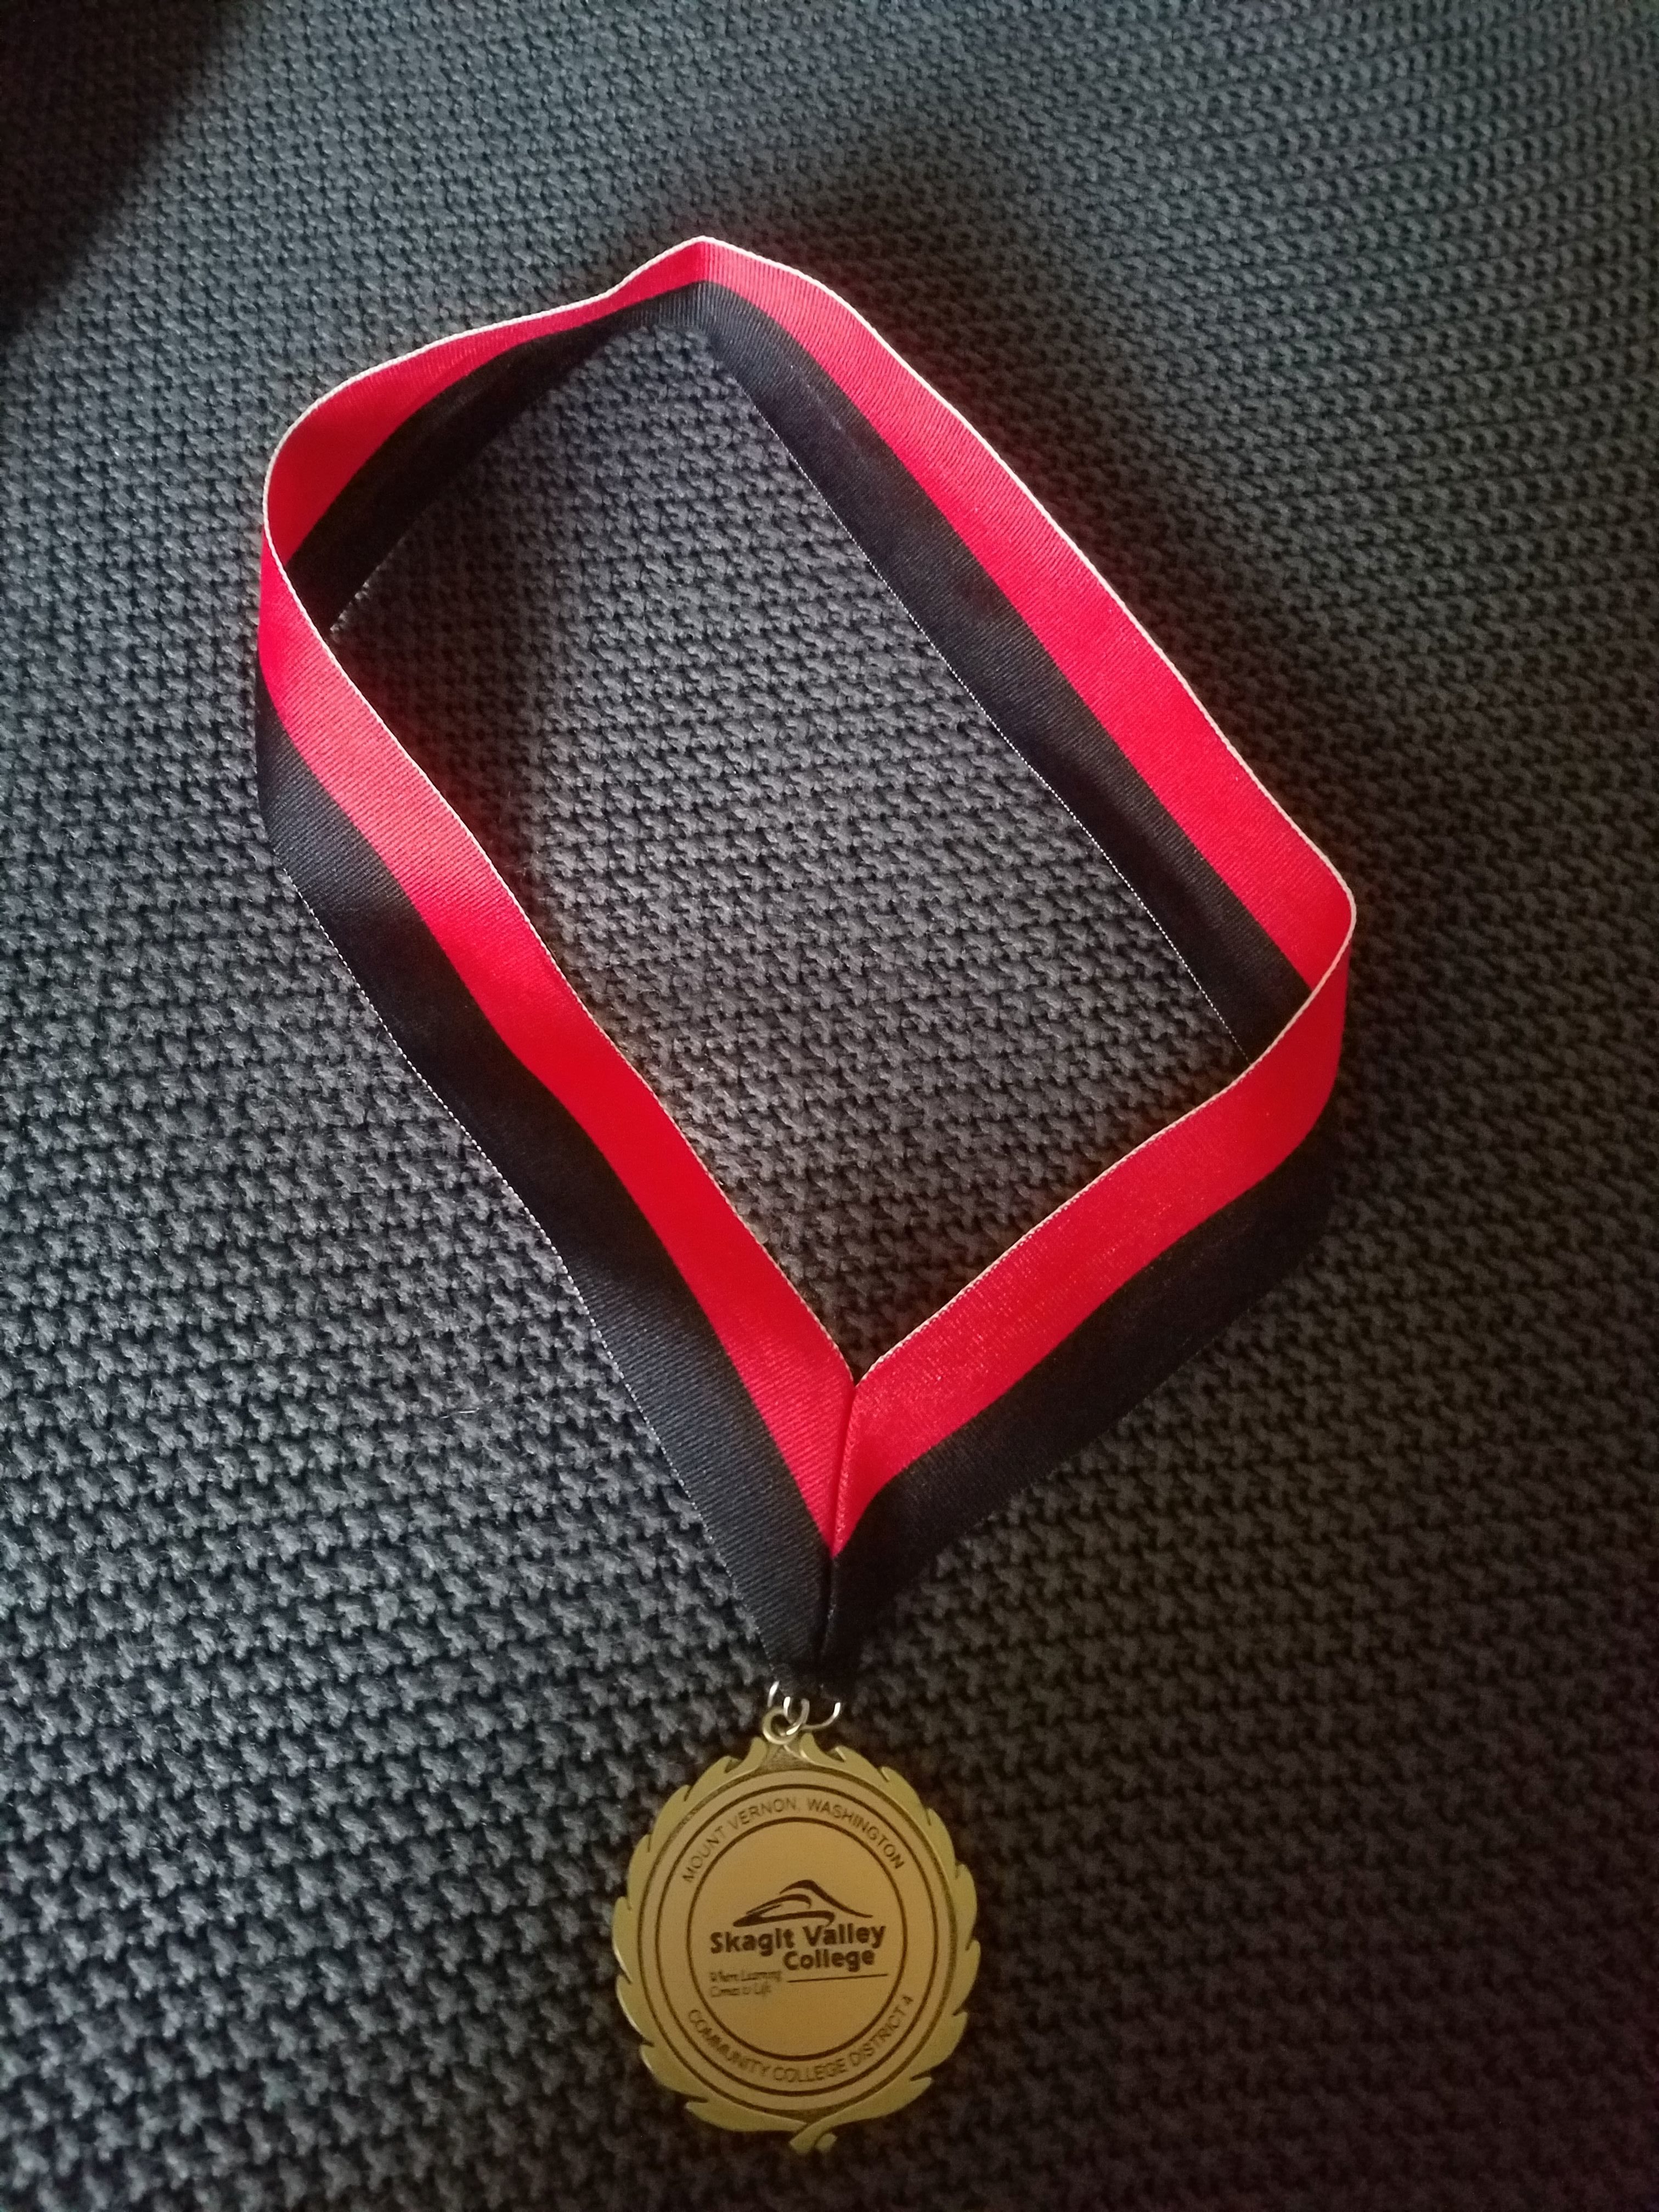 President's Medal